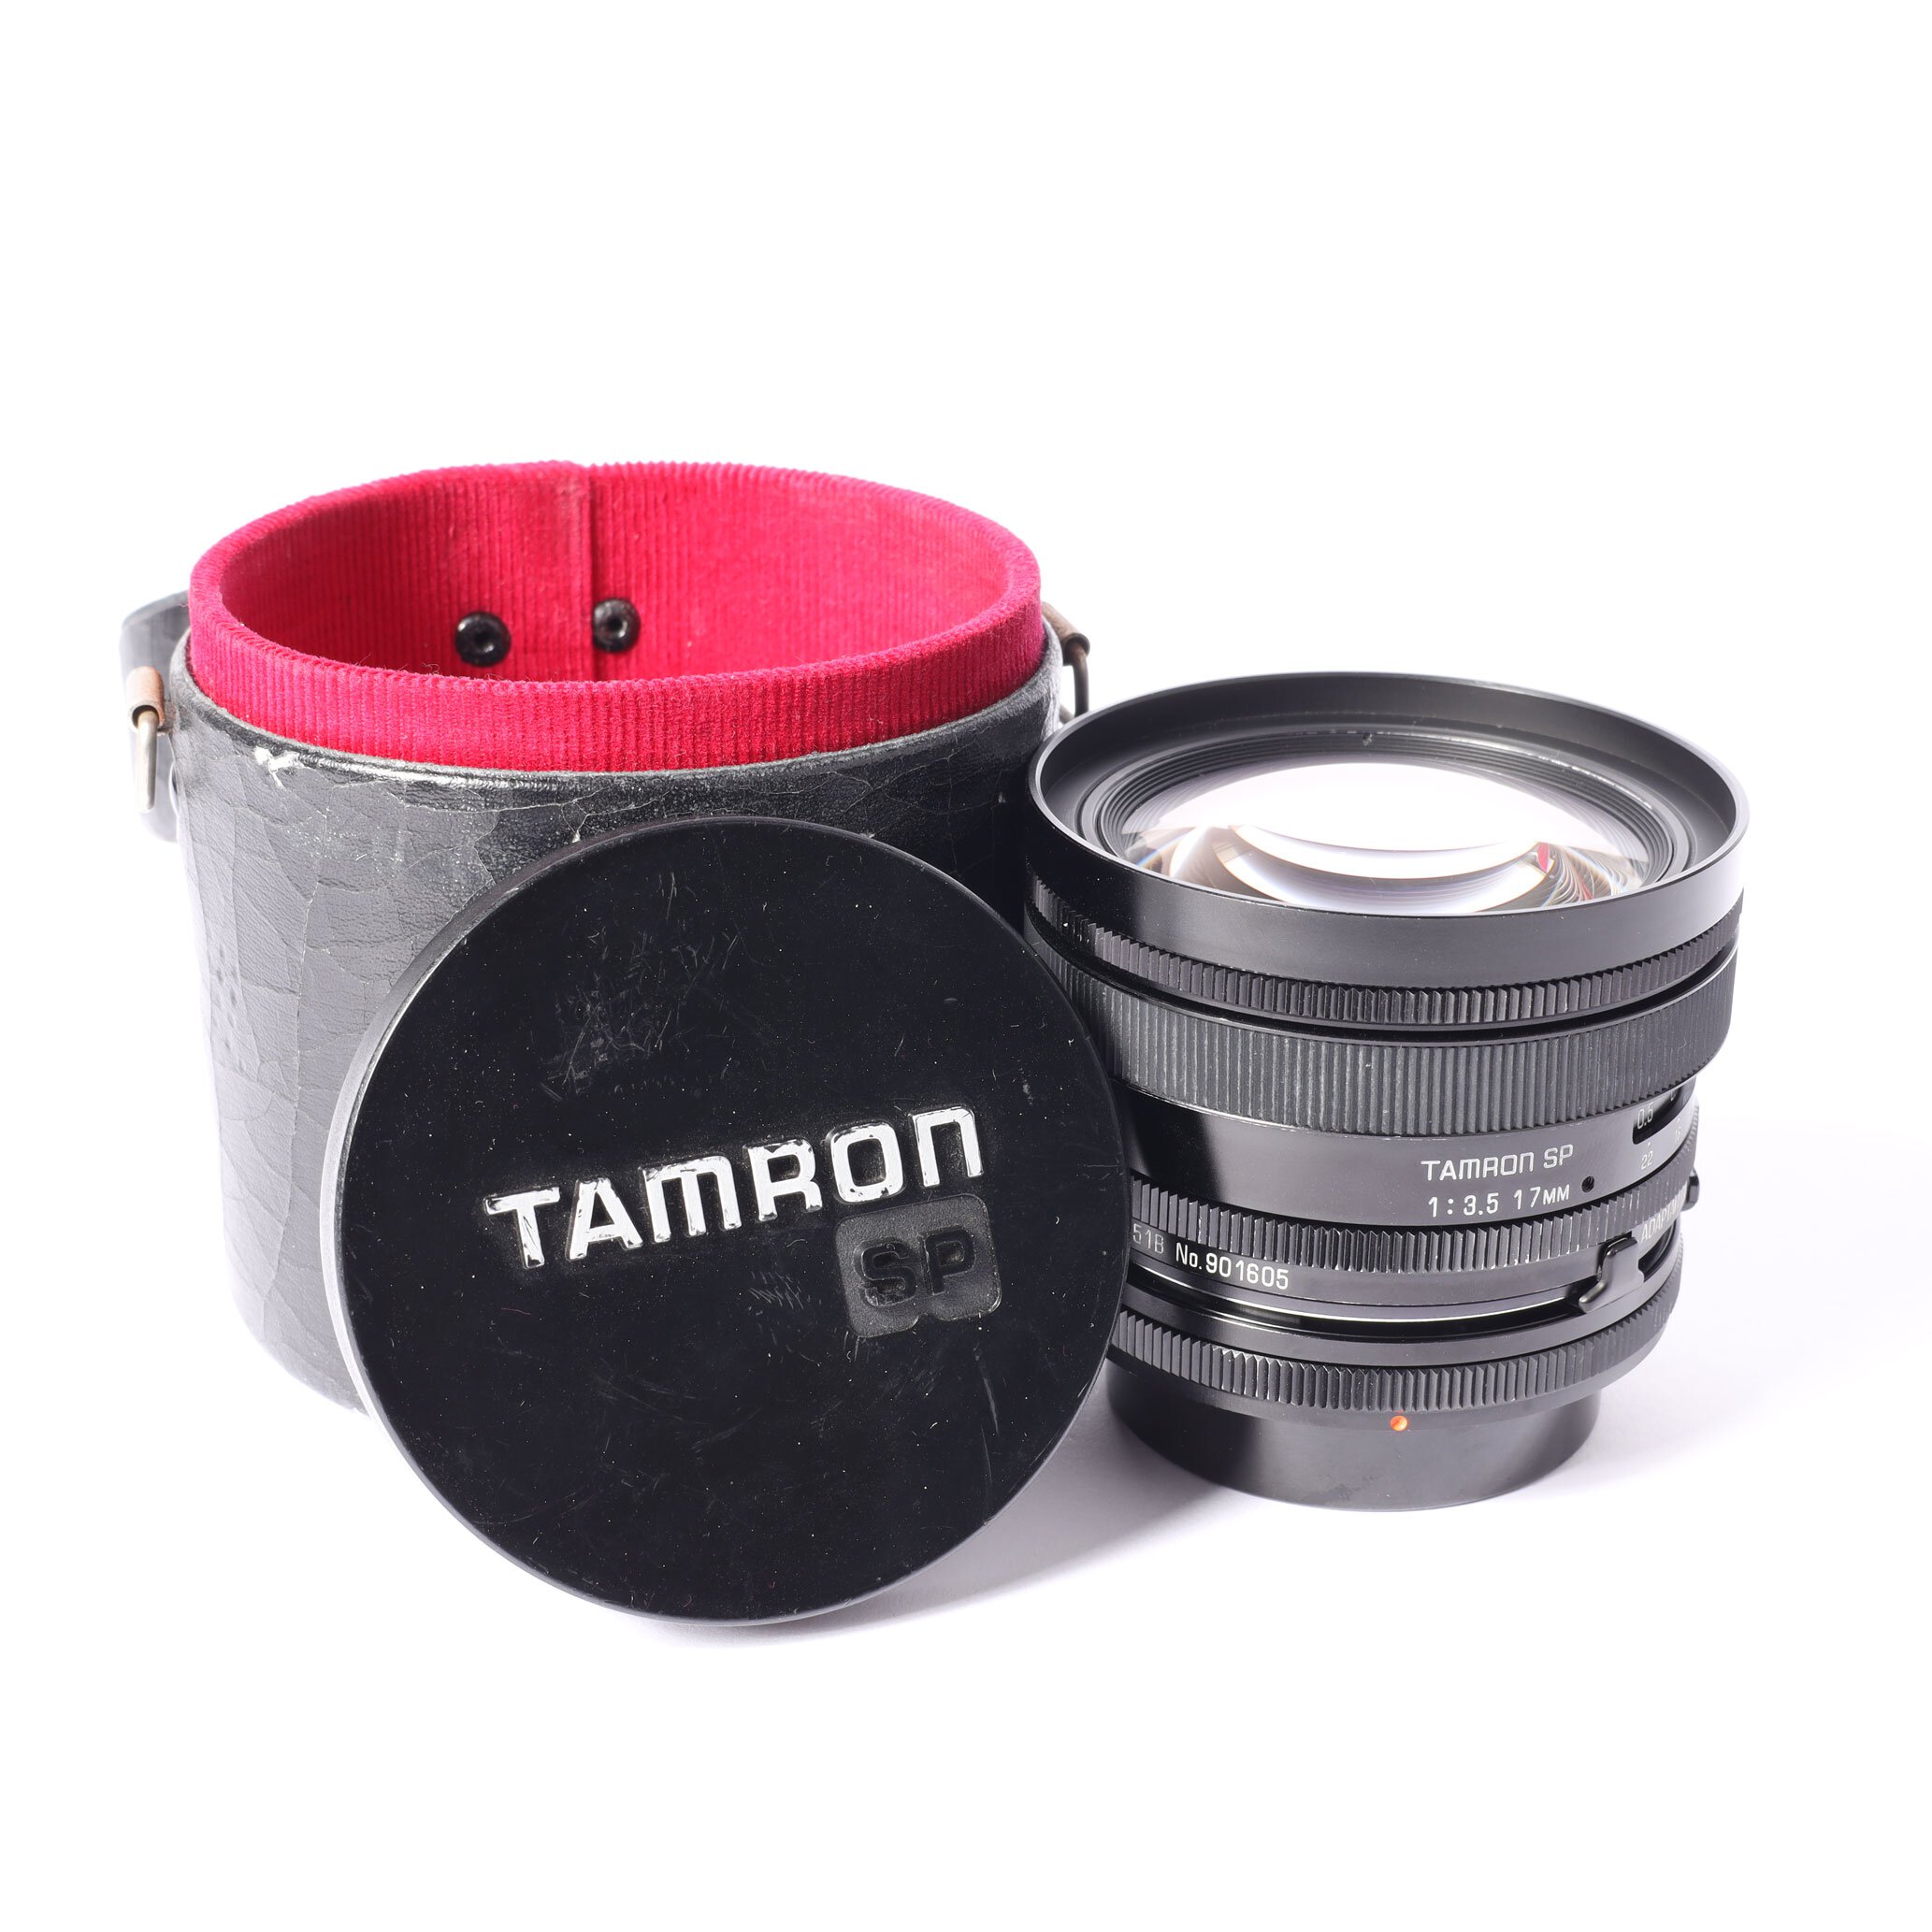 Canon FD Tamron SP 3,5/17